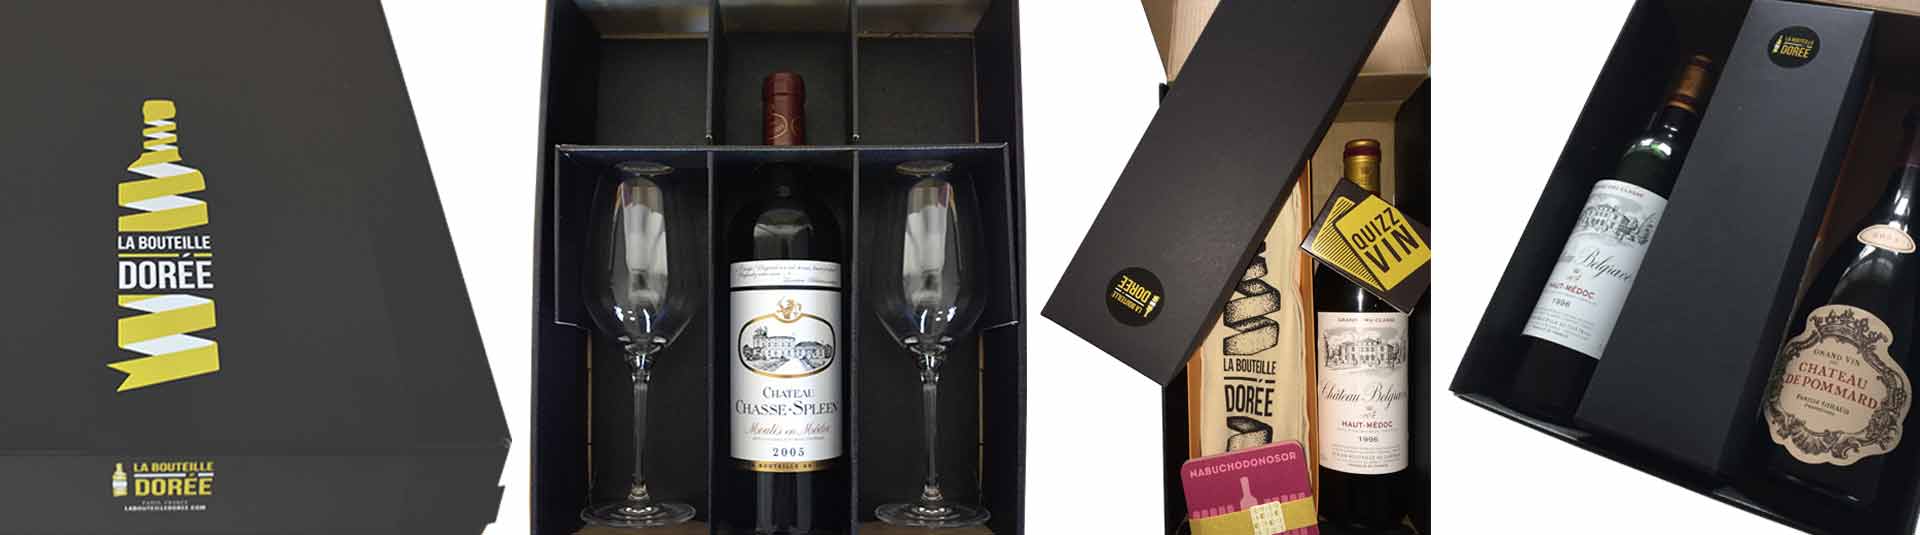 Cadeaux et coffrets de vins de qualité de Saint Chinian à offrir